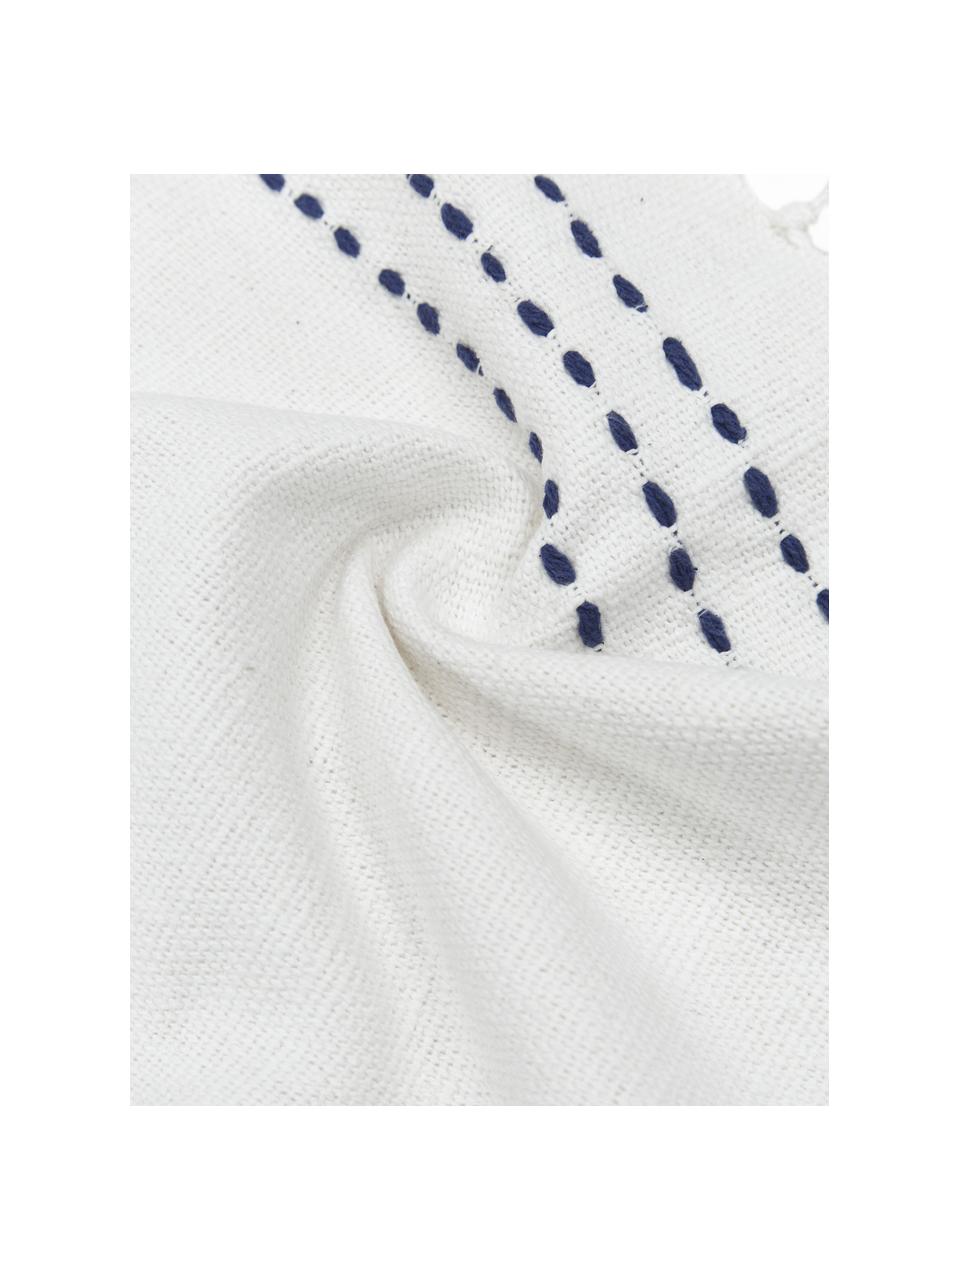 Bestickte Baumwoll-Kissenhülle Finca mit Fransen, 100% Baumwolle, Weiß, Blau, B 30 x L 50 cm